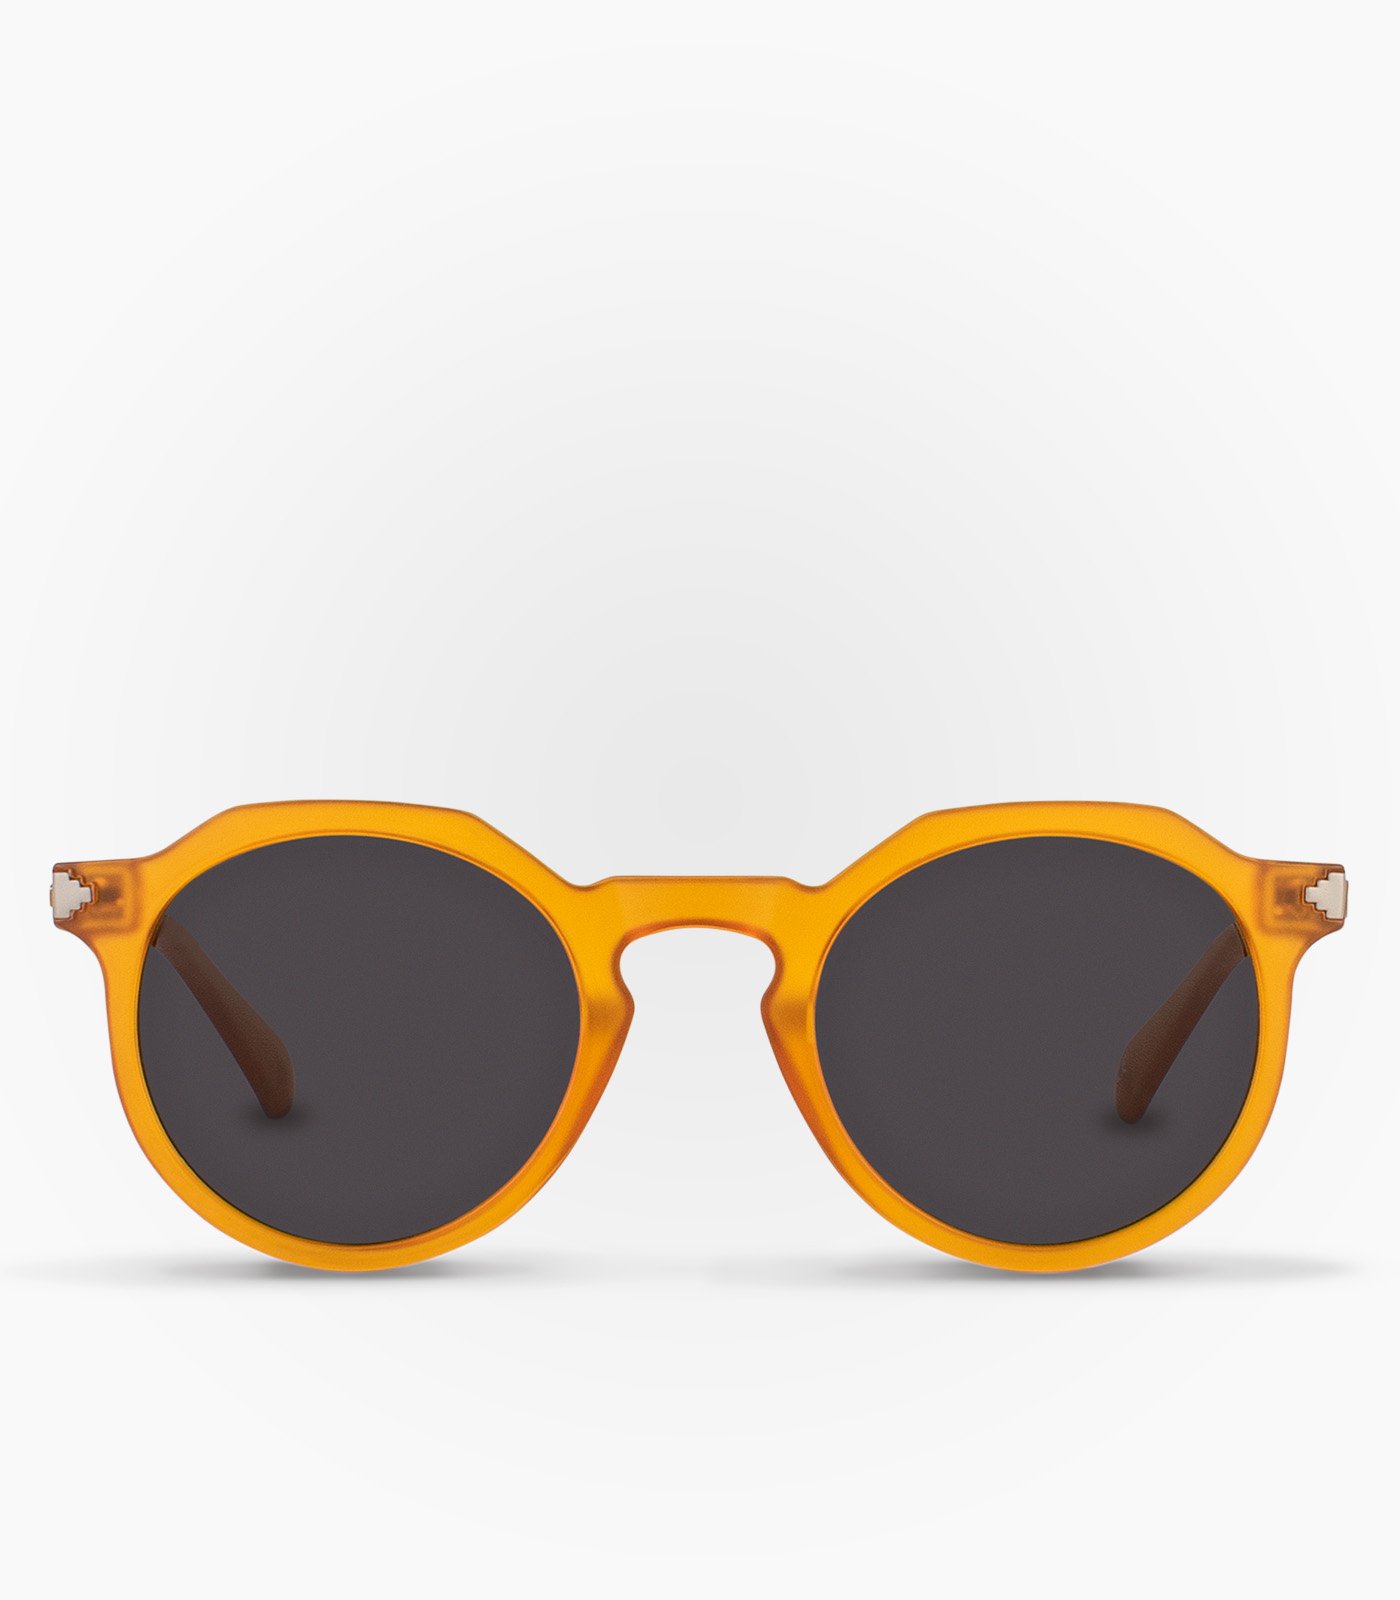 Bevægelse Rasende Der er behov for Euroman anbefaler 9 solbriller til forårssolen - Euroman